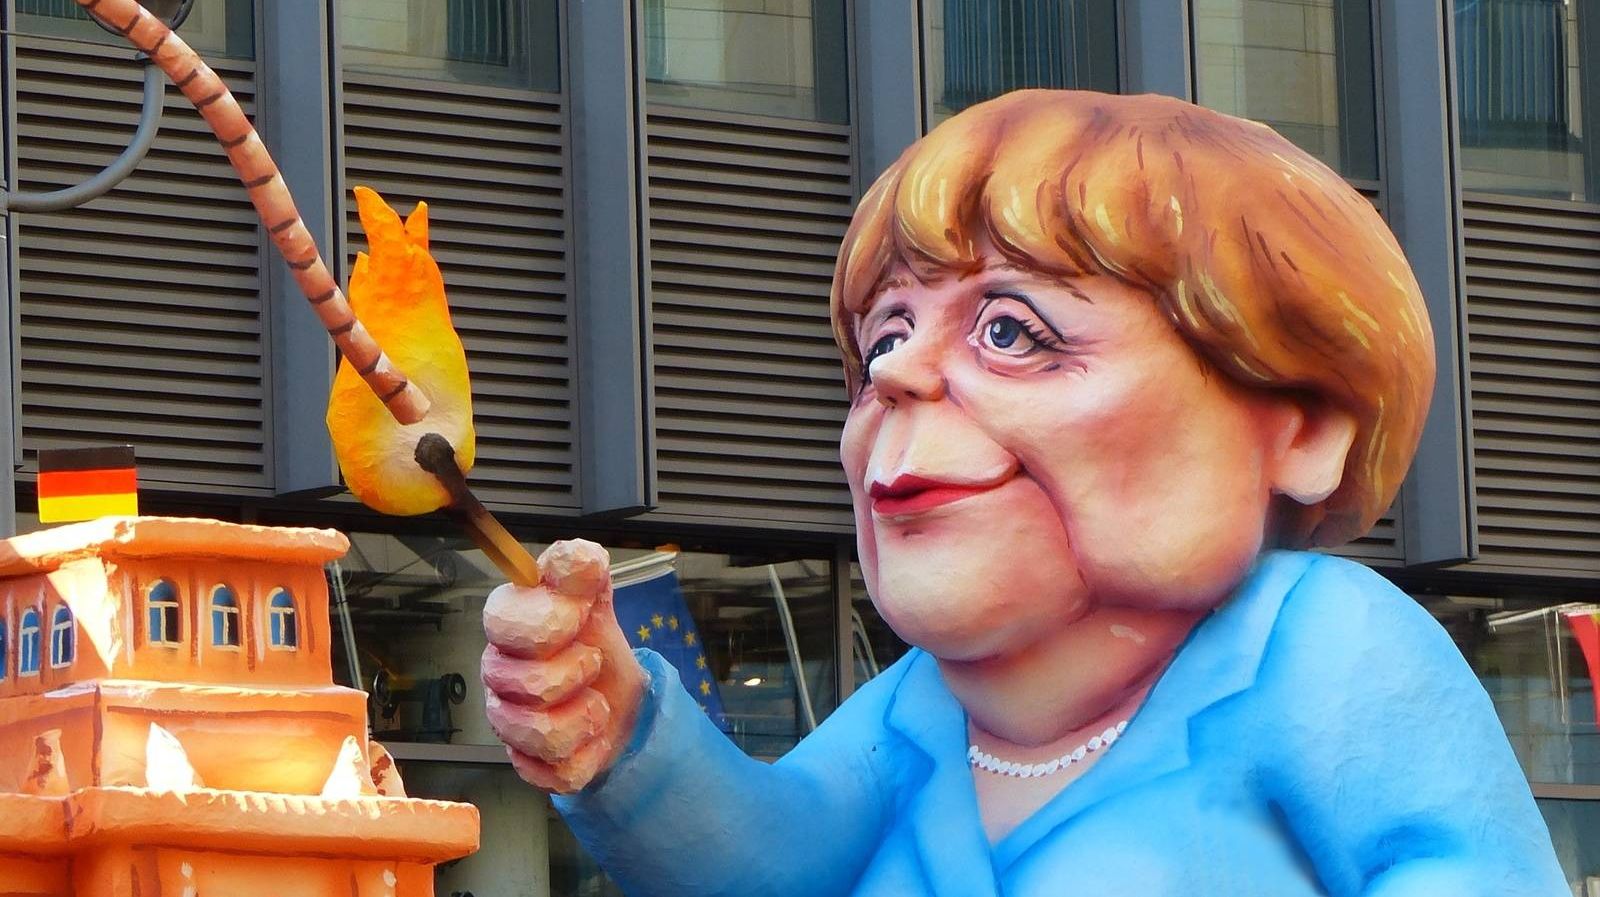 Меркель поджигает фитиль. Карикатура.